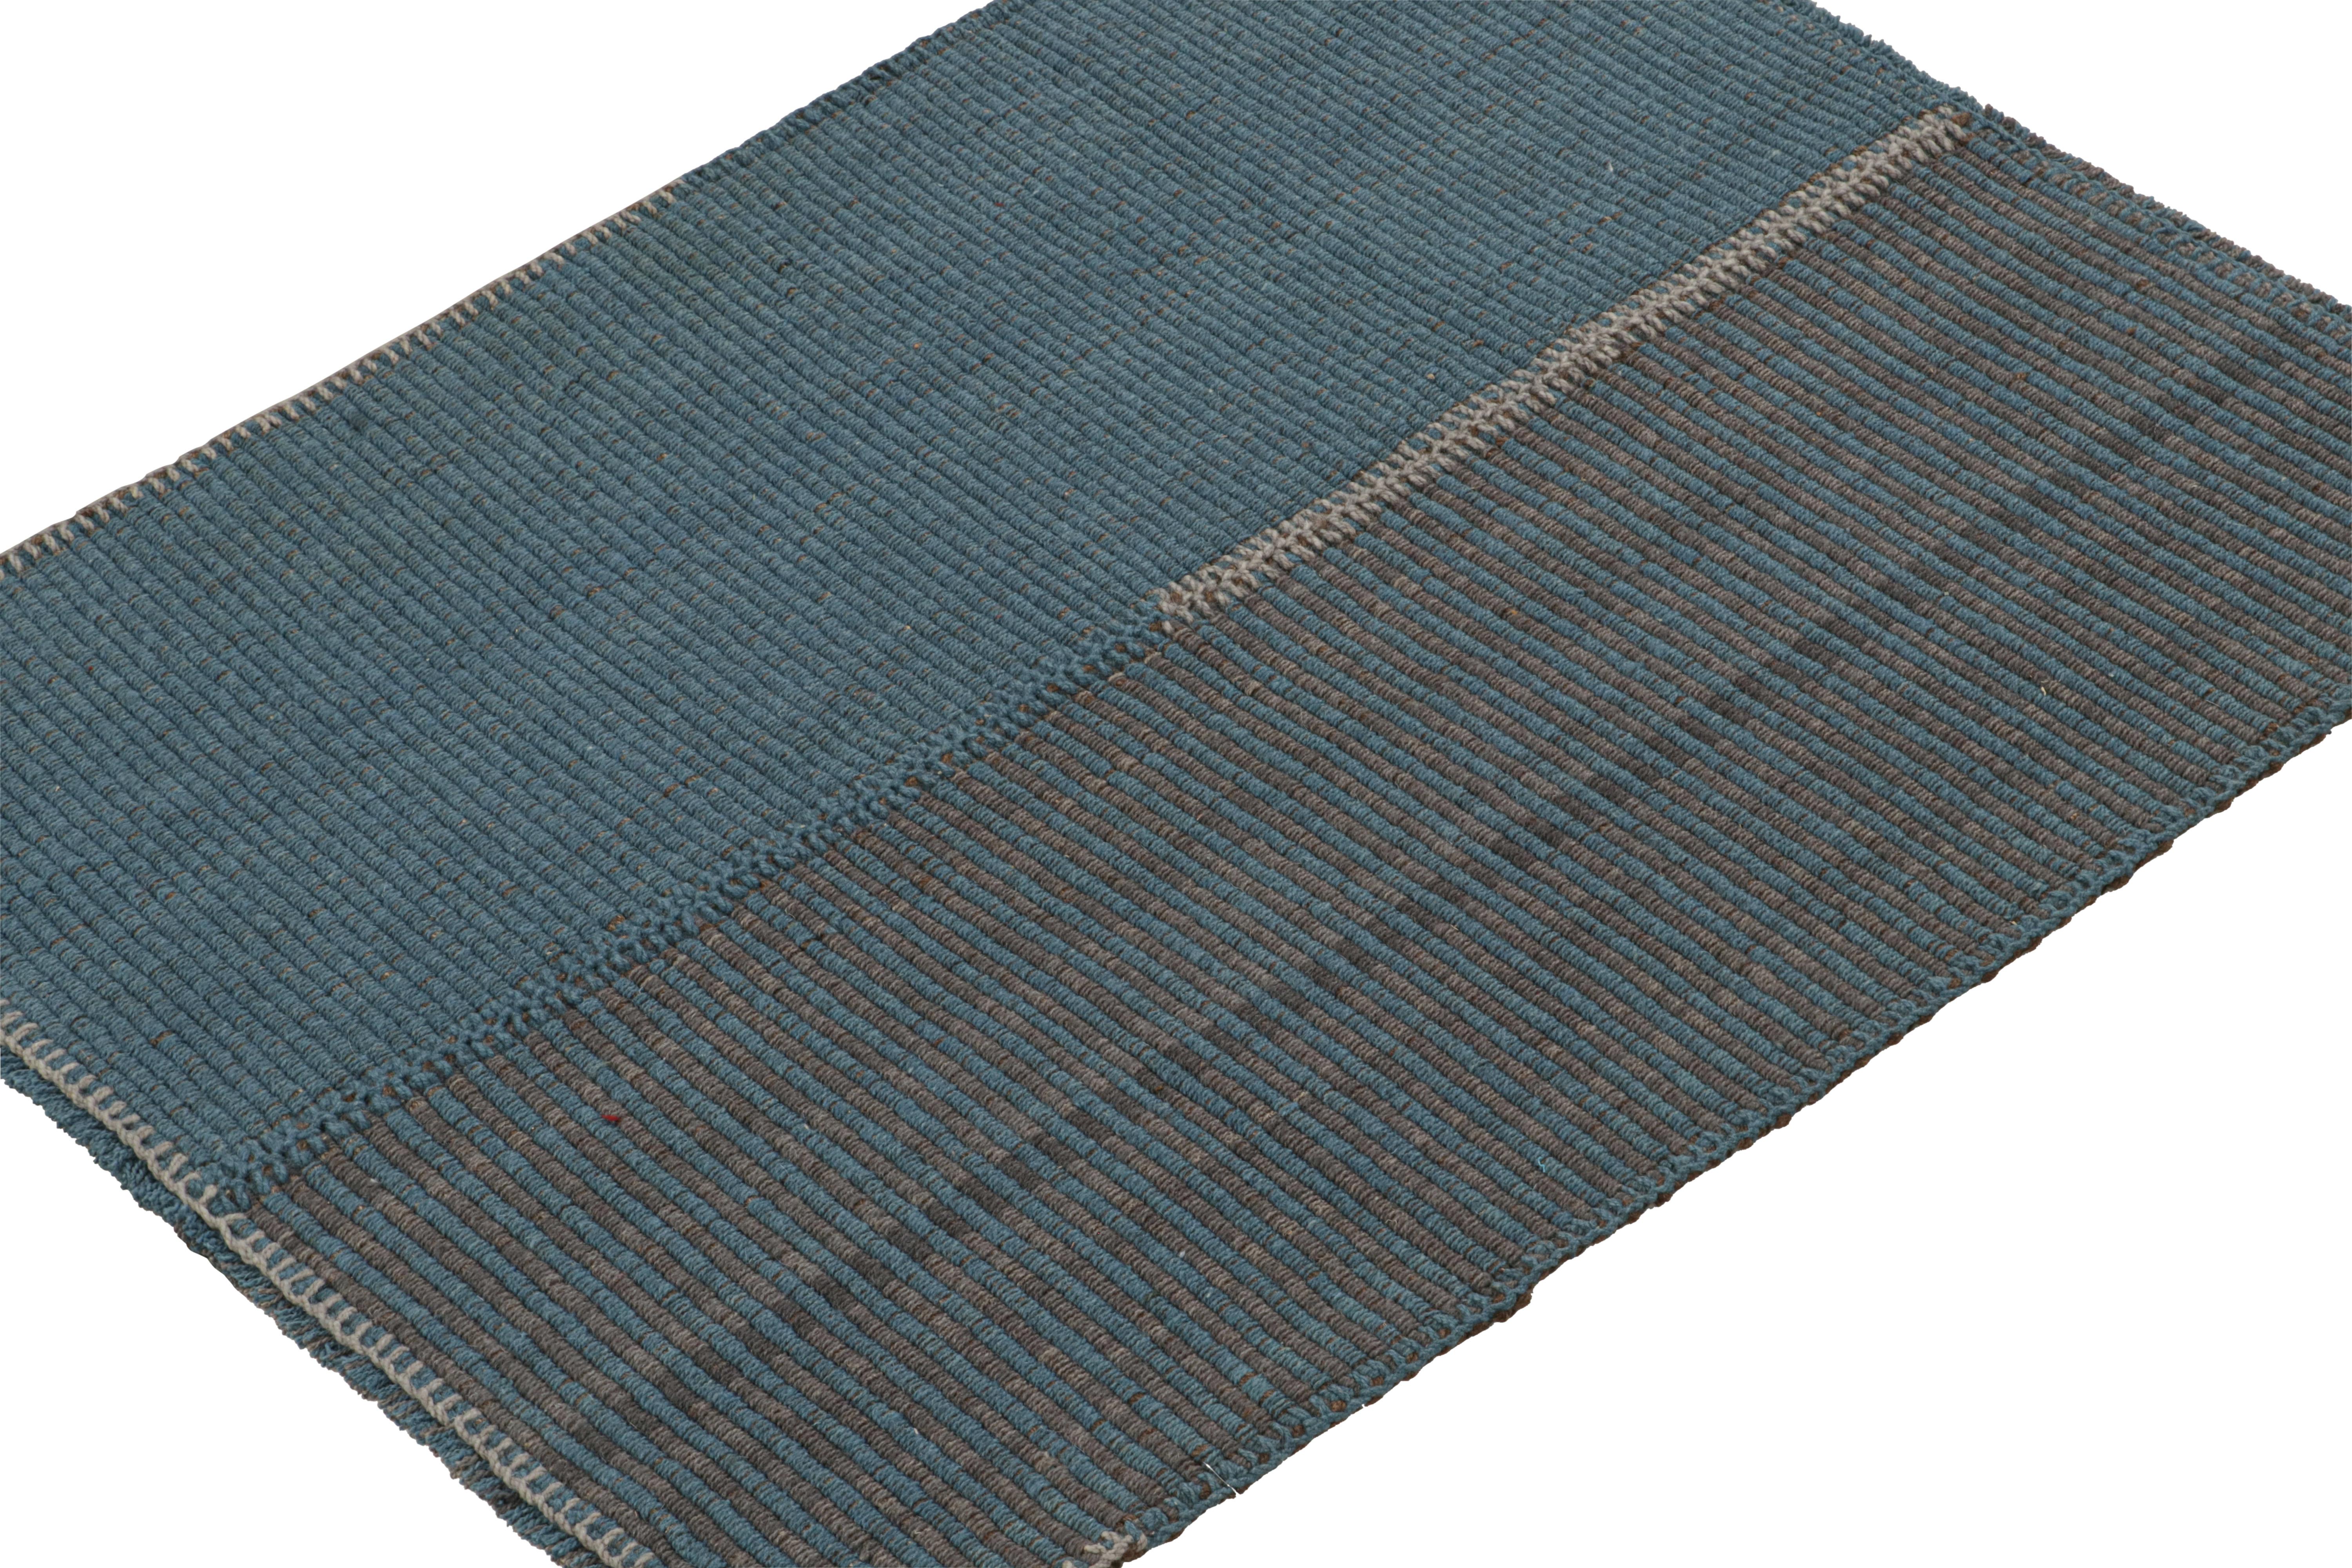 Perse Rug & Kilim's Contemporary Kilim in Blue and Gray Stripes with Brown Accents (Kilim contemporain à rayures bleues et grises avec des accents bruns) en vente